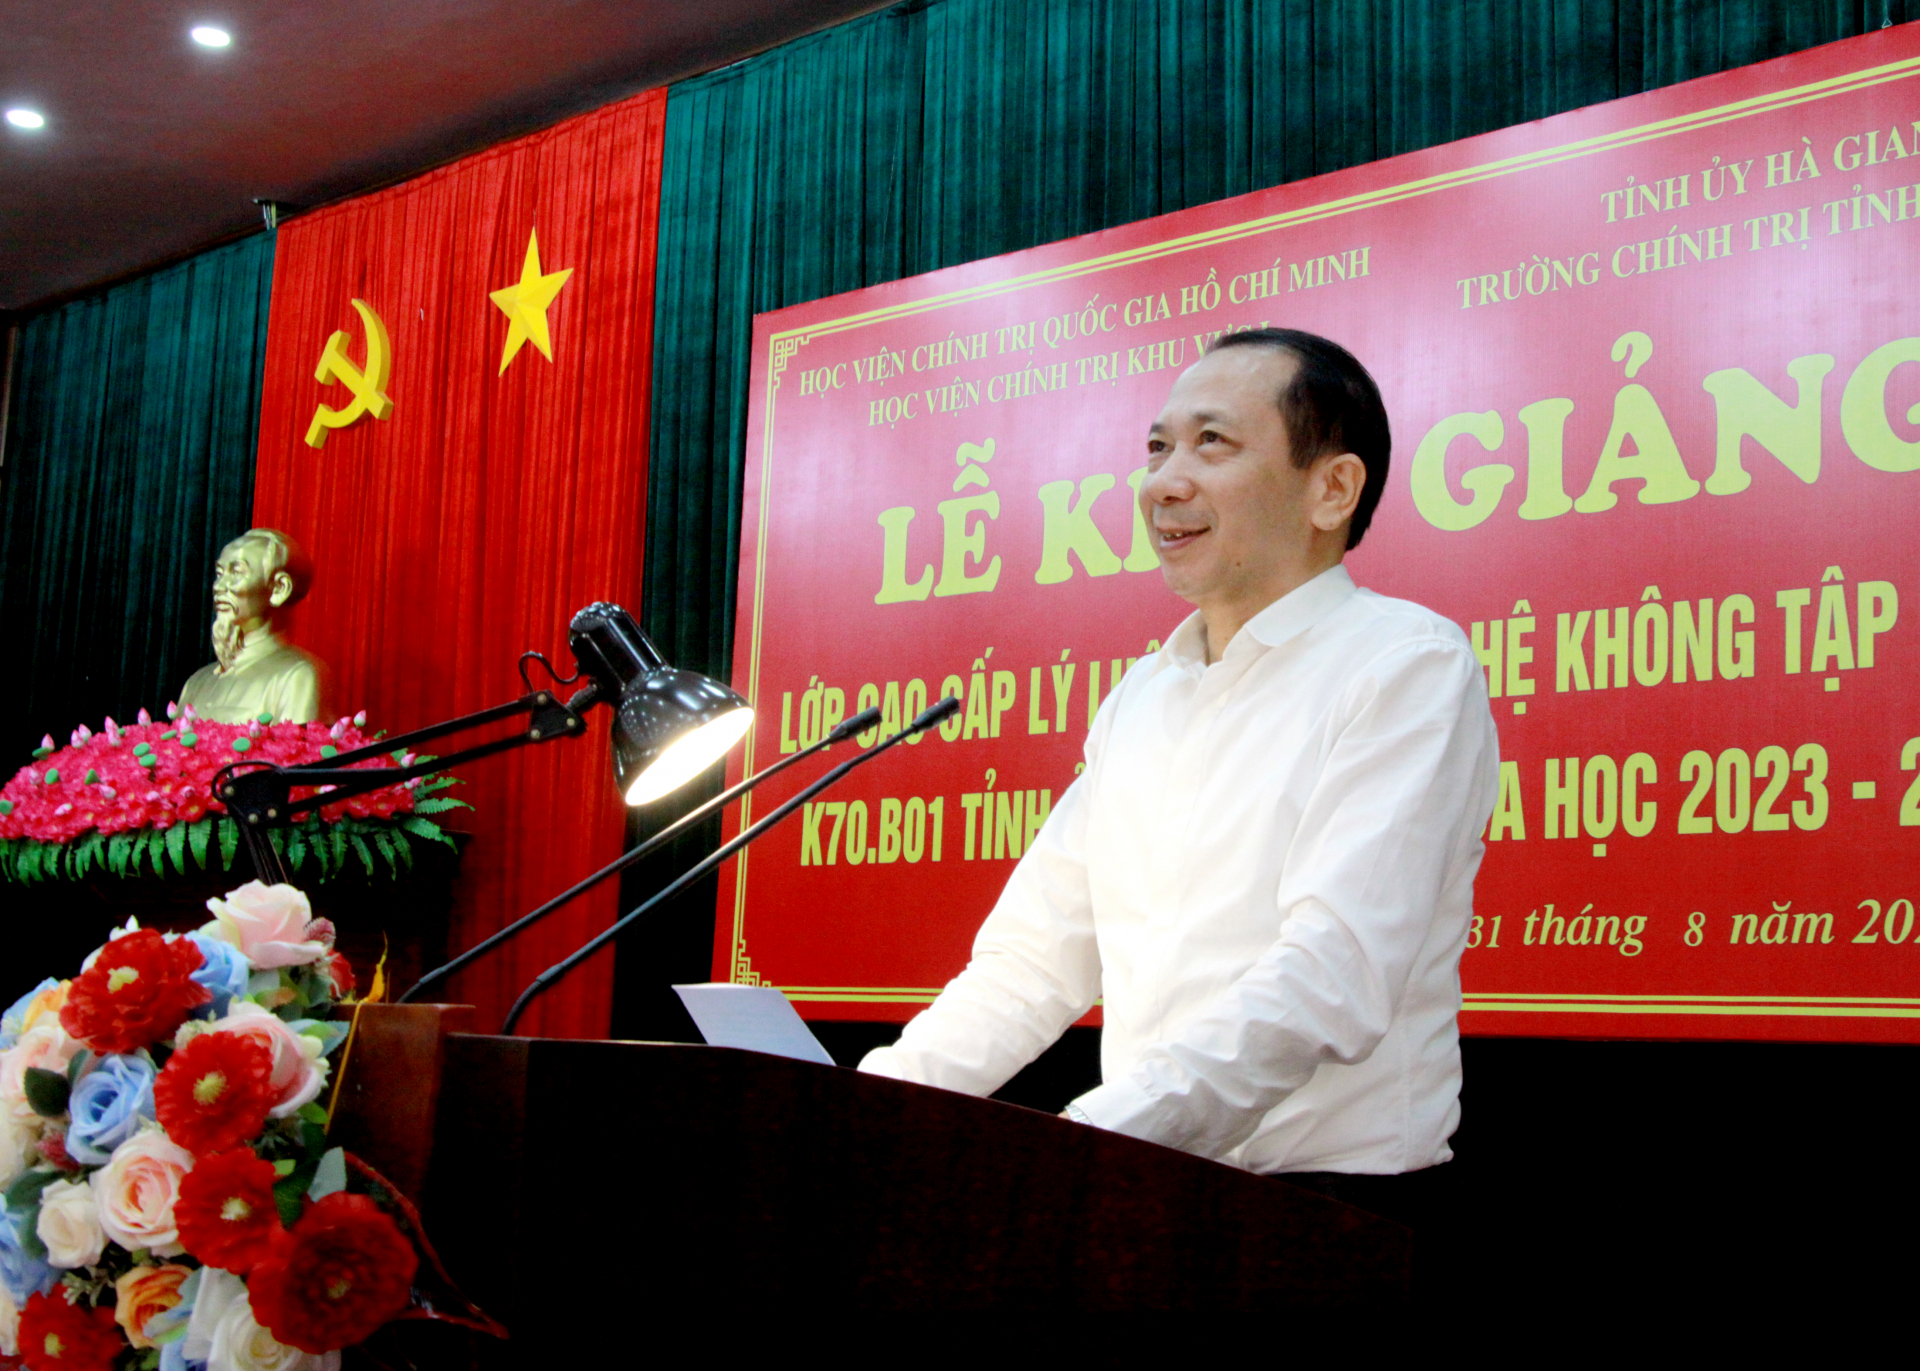 Phó Chủ tịch UBND tỉnh Trần Đức Qúy phát biểu tại lễ khai giảng